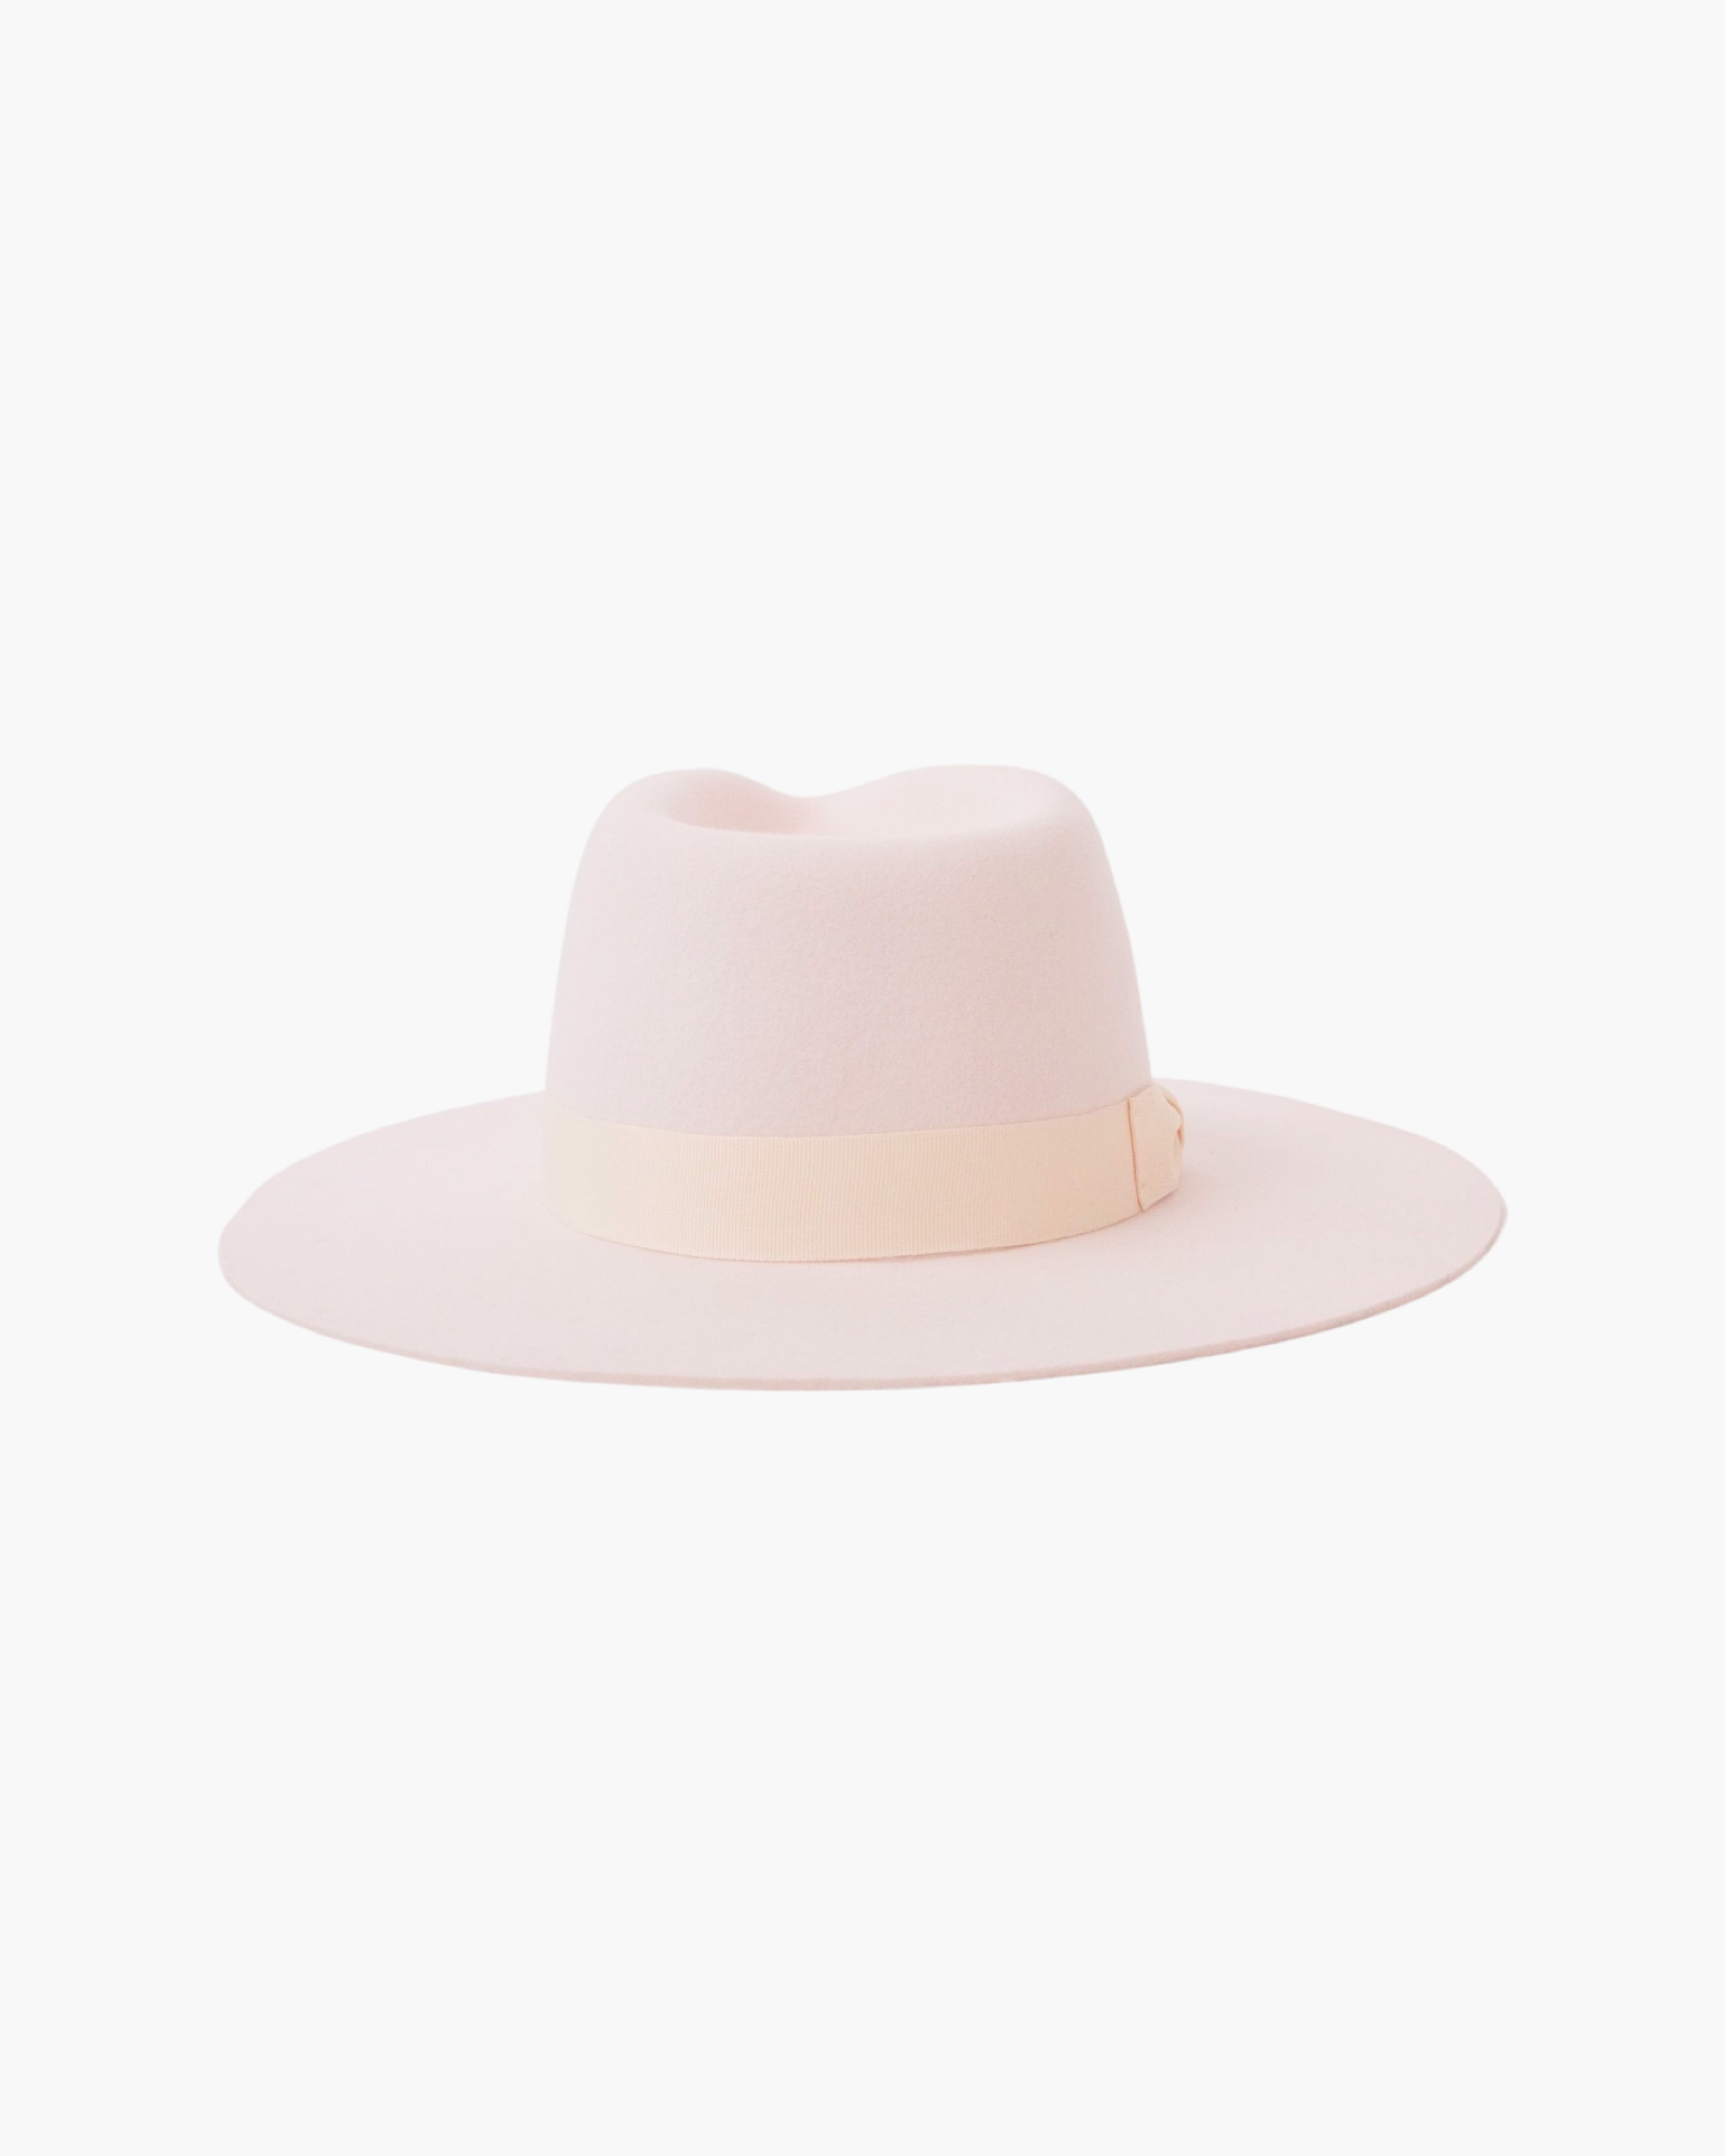 Rancher Wide Brim Hat - Blush